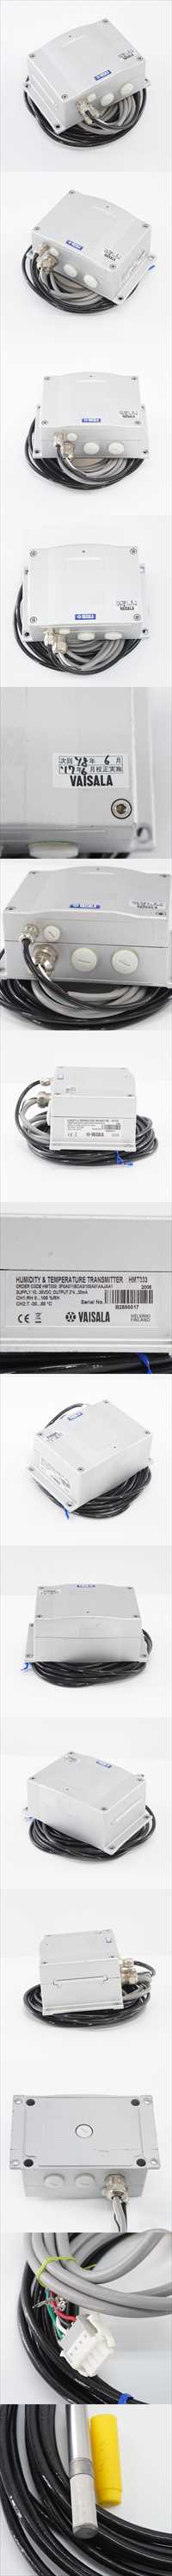 安い直送[DW]USED 8日保証 06/2017CAL VAISALA HMT333 湿度温度変換器 HUMIDITY & TEMPERATURE TRANSMITTER[ST03372-0013] 環境測定器